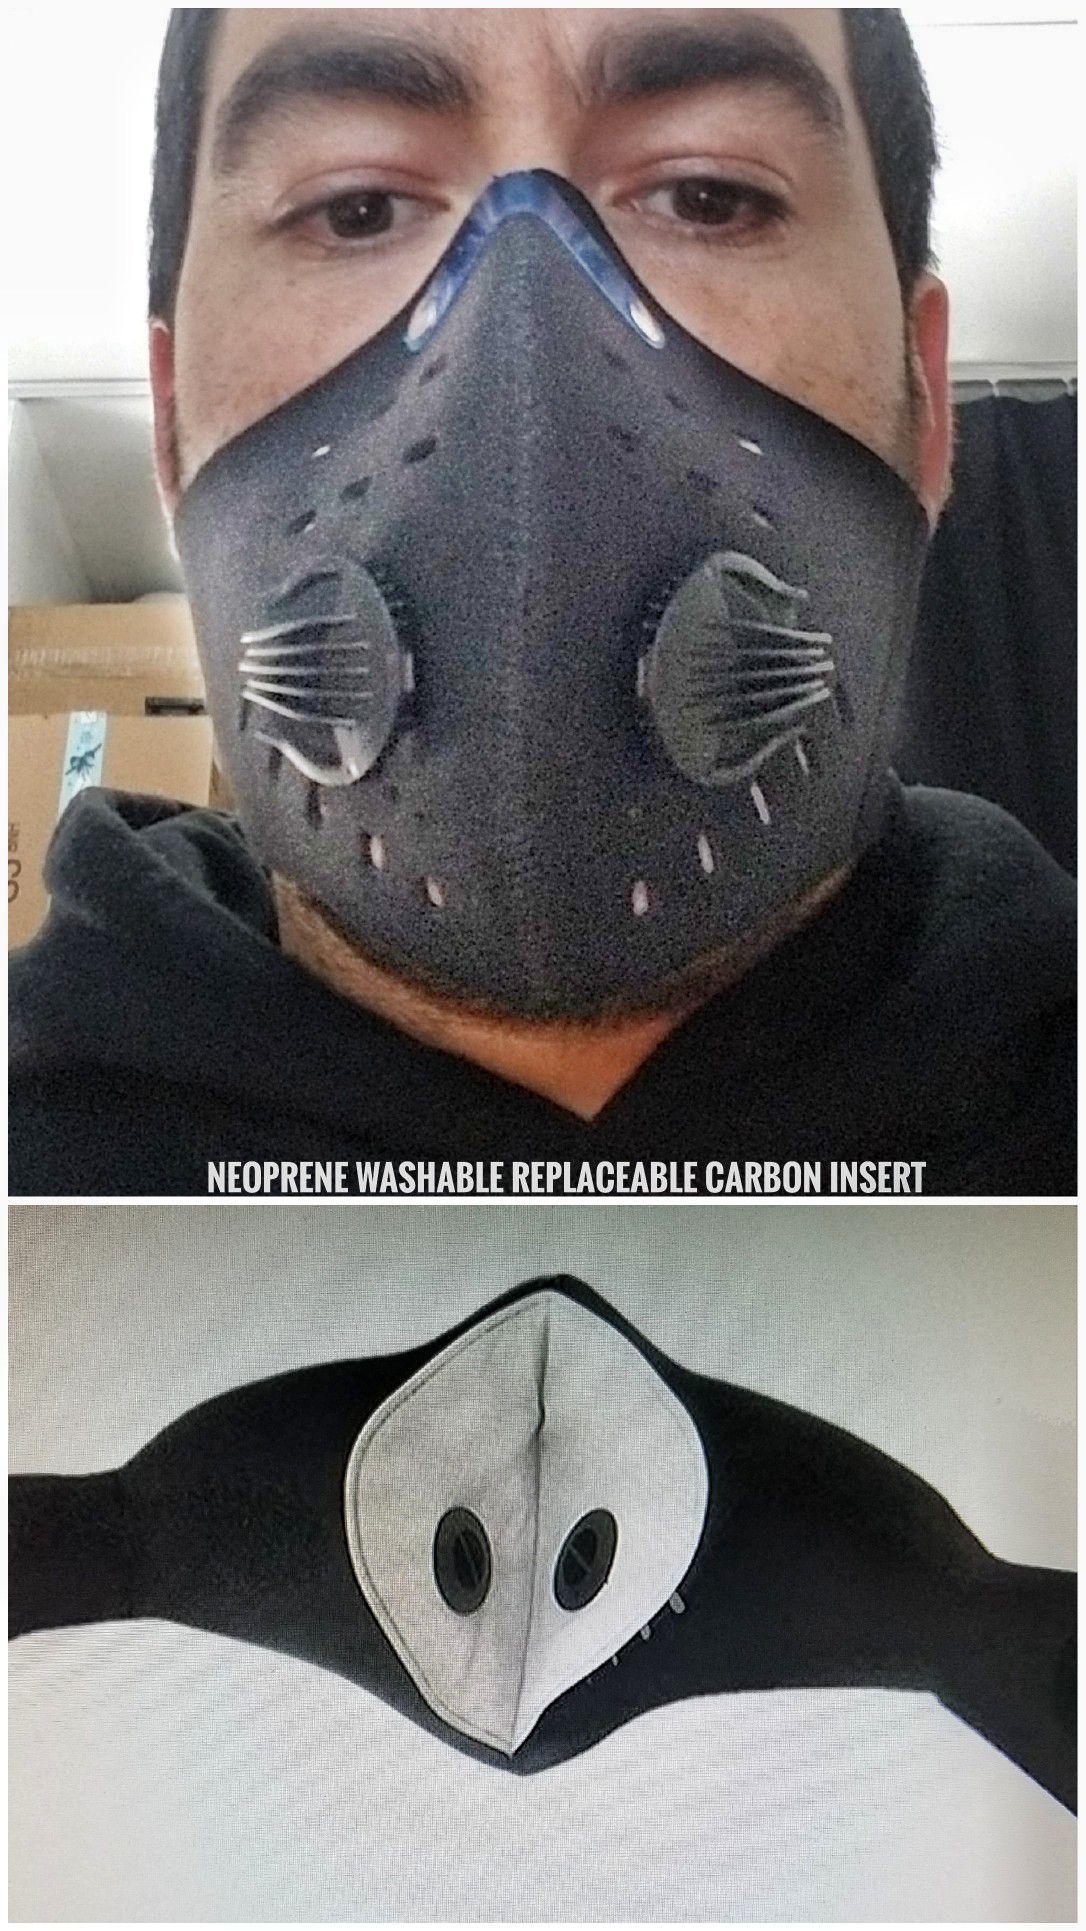 2 pcs. Black neoprene running mask (not for medical use)